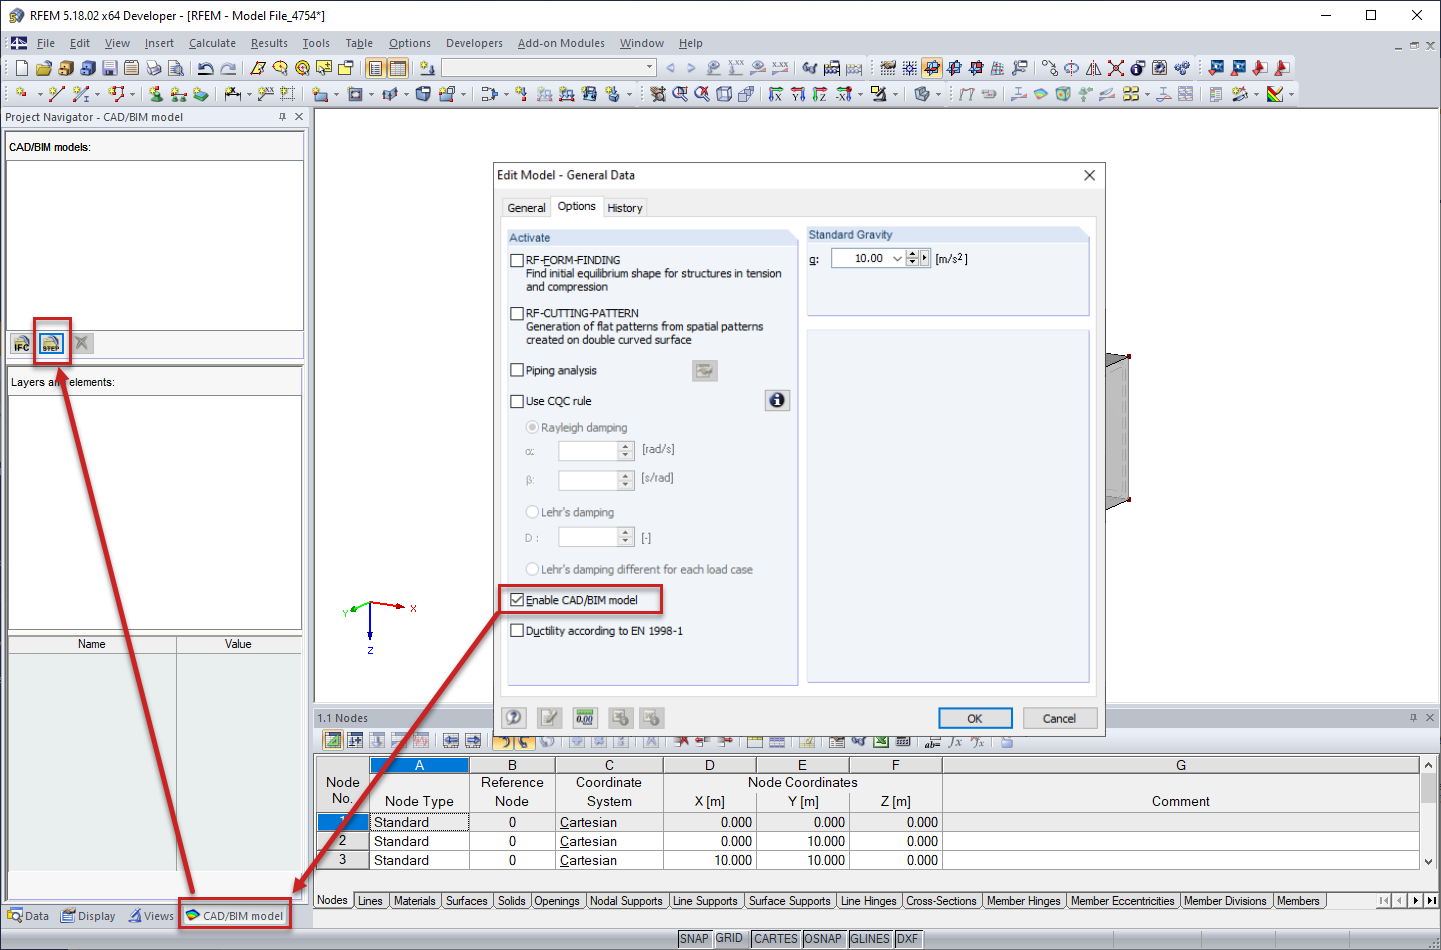 Attivazione del modello CAD/BIM per l'importazione di file .STEP da Autodesk Inventor